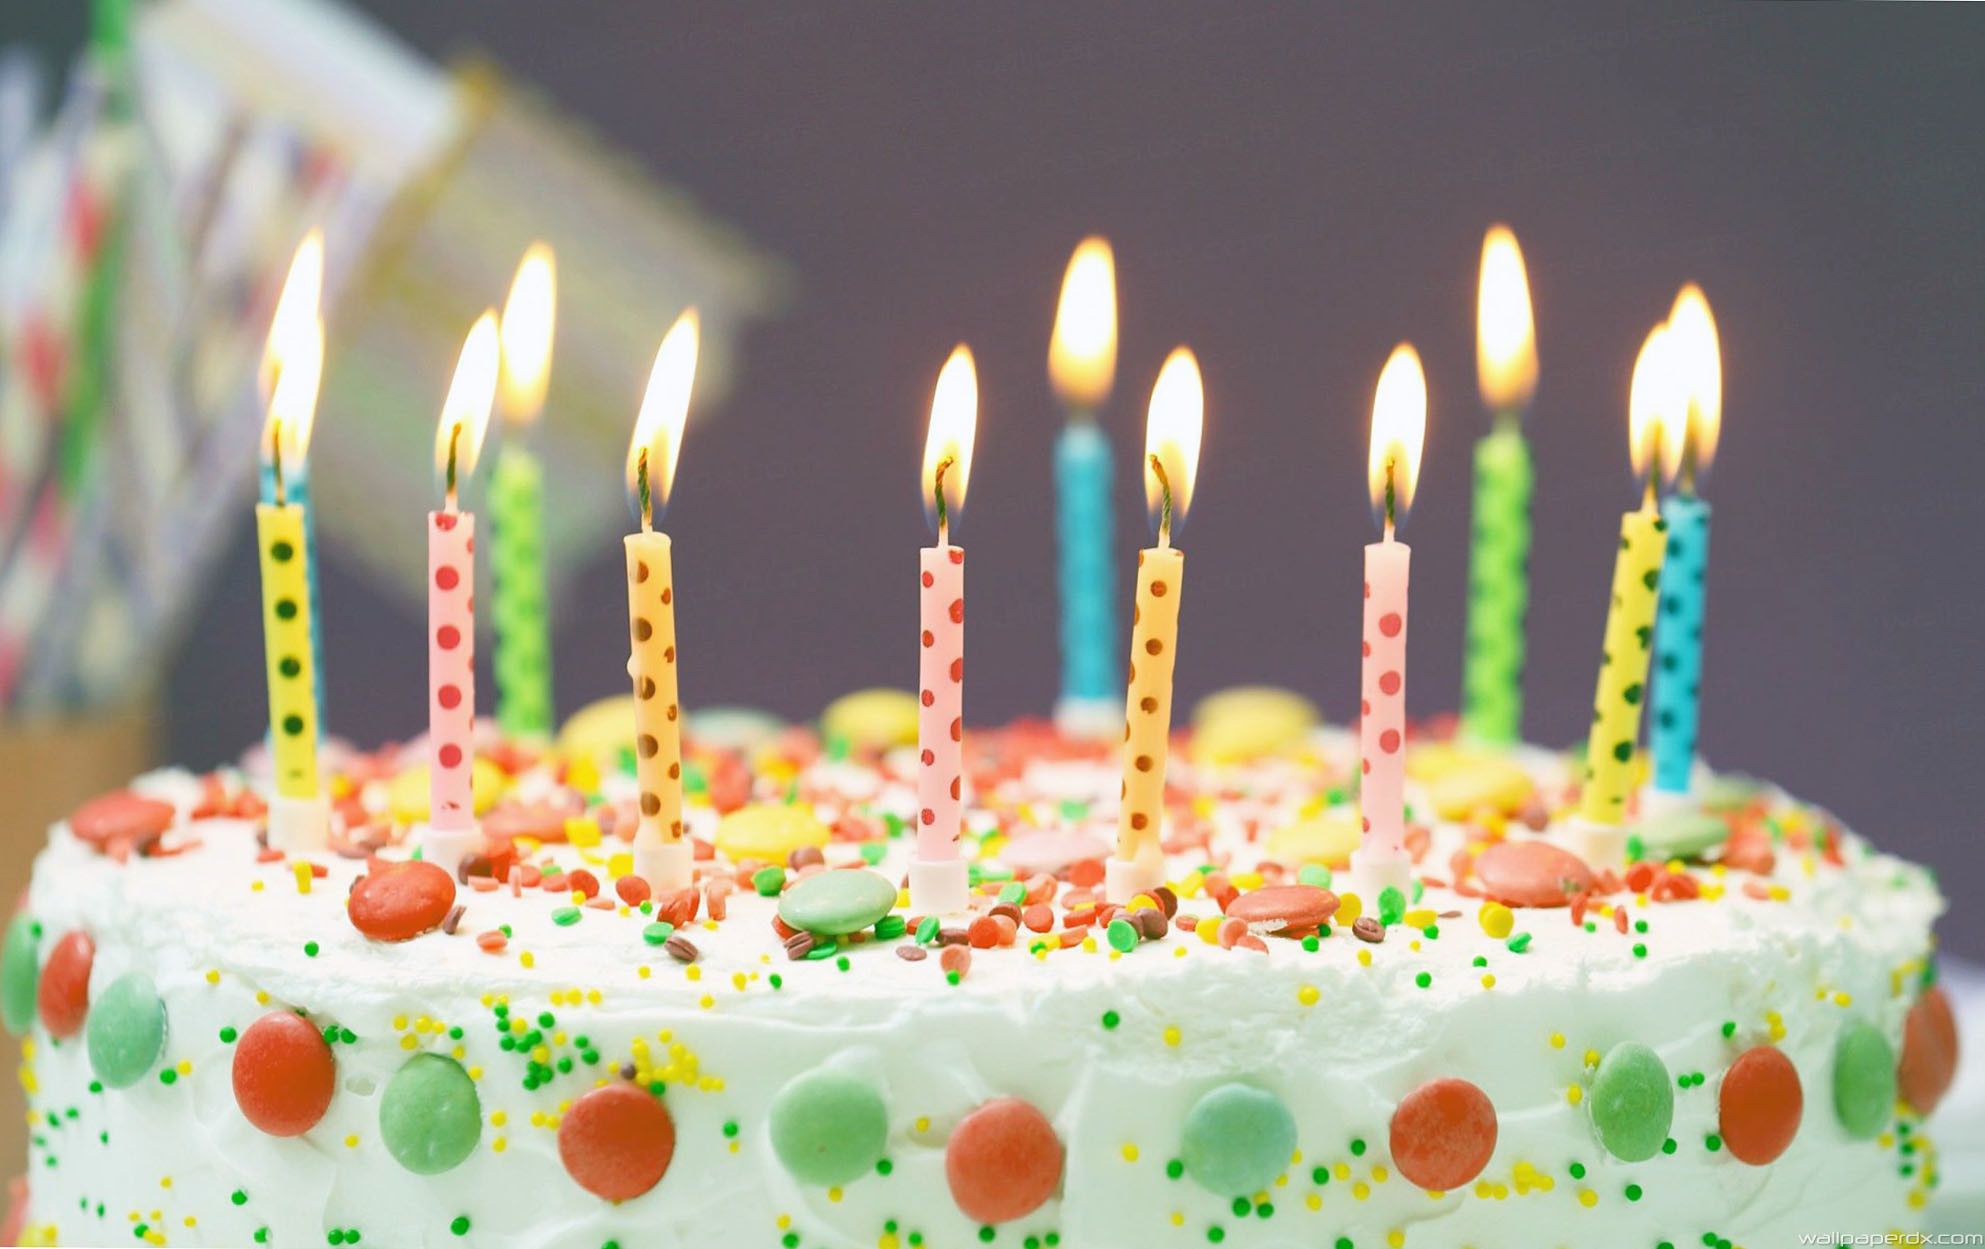 Descargar 4k Happy Birthday Wish On Cake Wallpapers - Mjs De